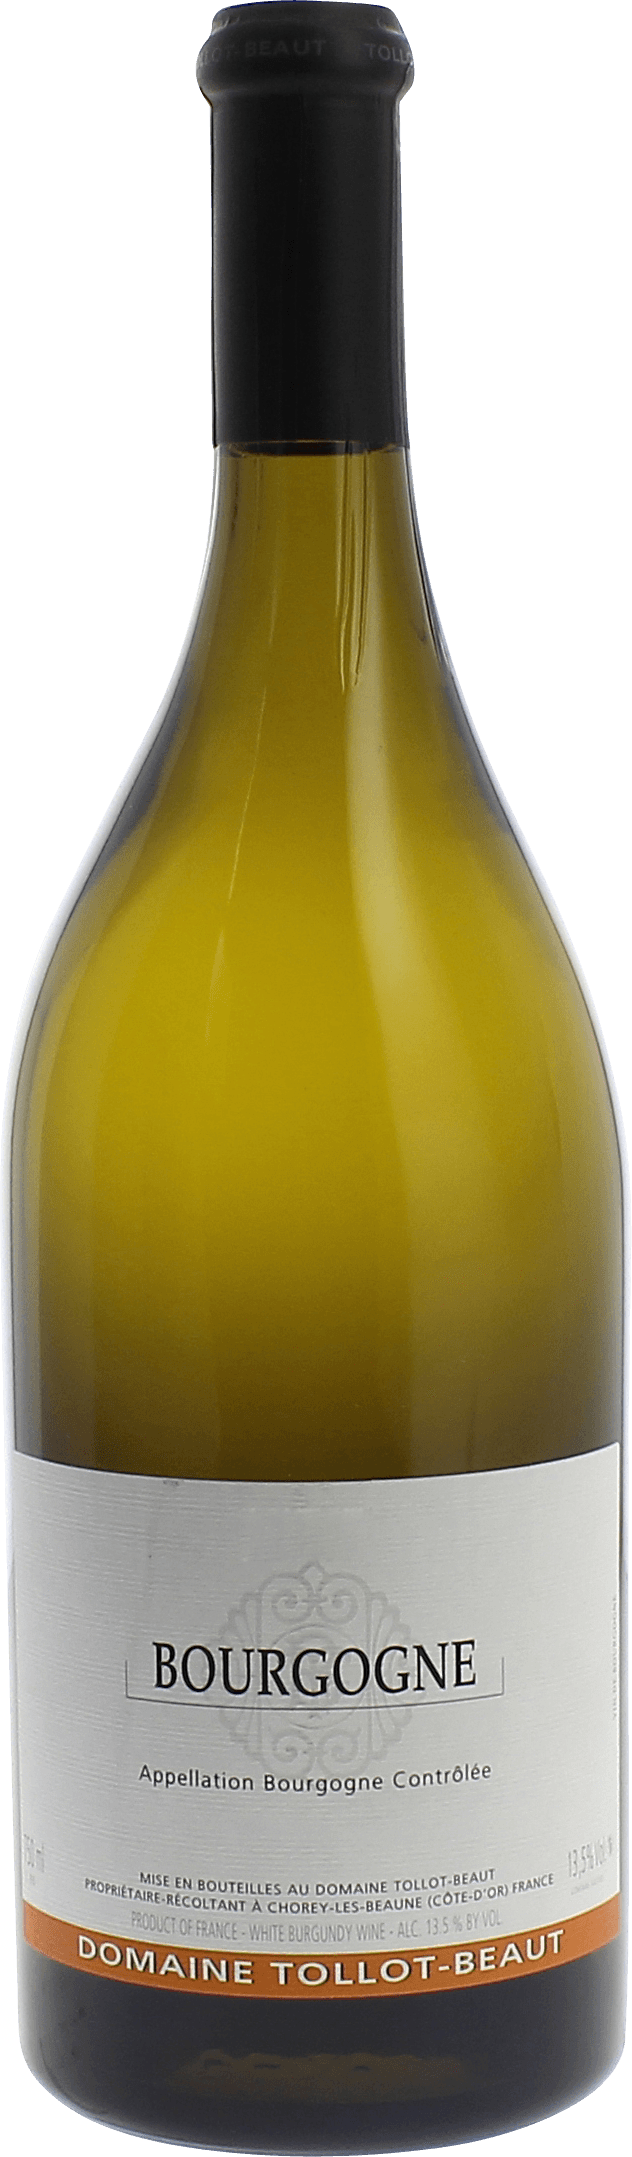 Bourgogne 2017 Domaine TOLLOT BEAUT, Bourgogne blanc